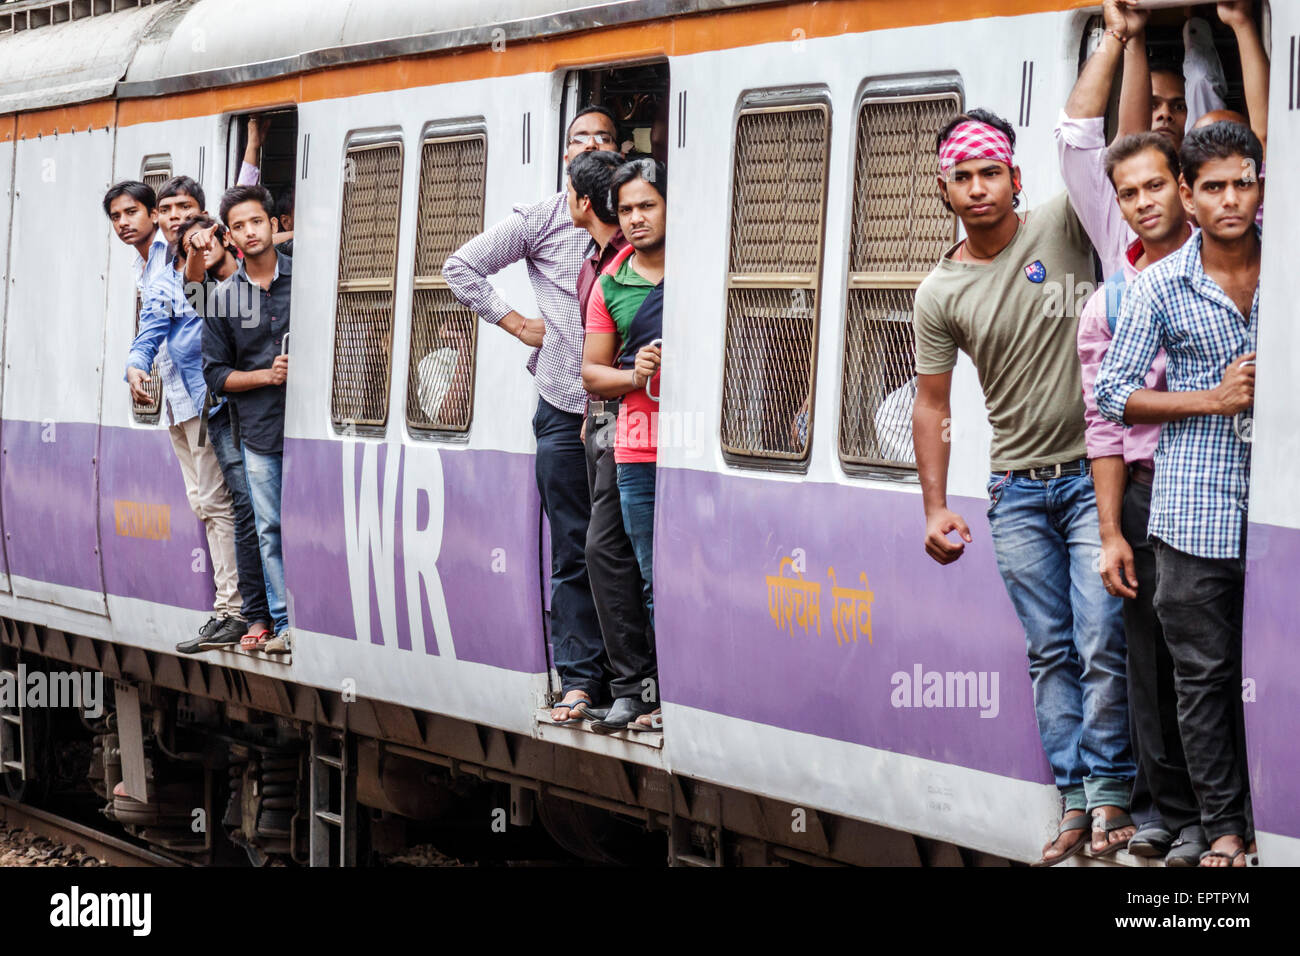 Mumbai India,Dharavi,Mahim Junction Railway Station,Western Line,train,riders,passenger passengers rider riders,hanging,open door,man men male,India15 Stock Photo